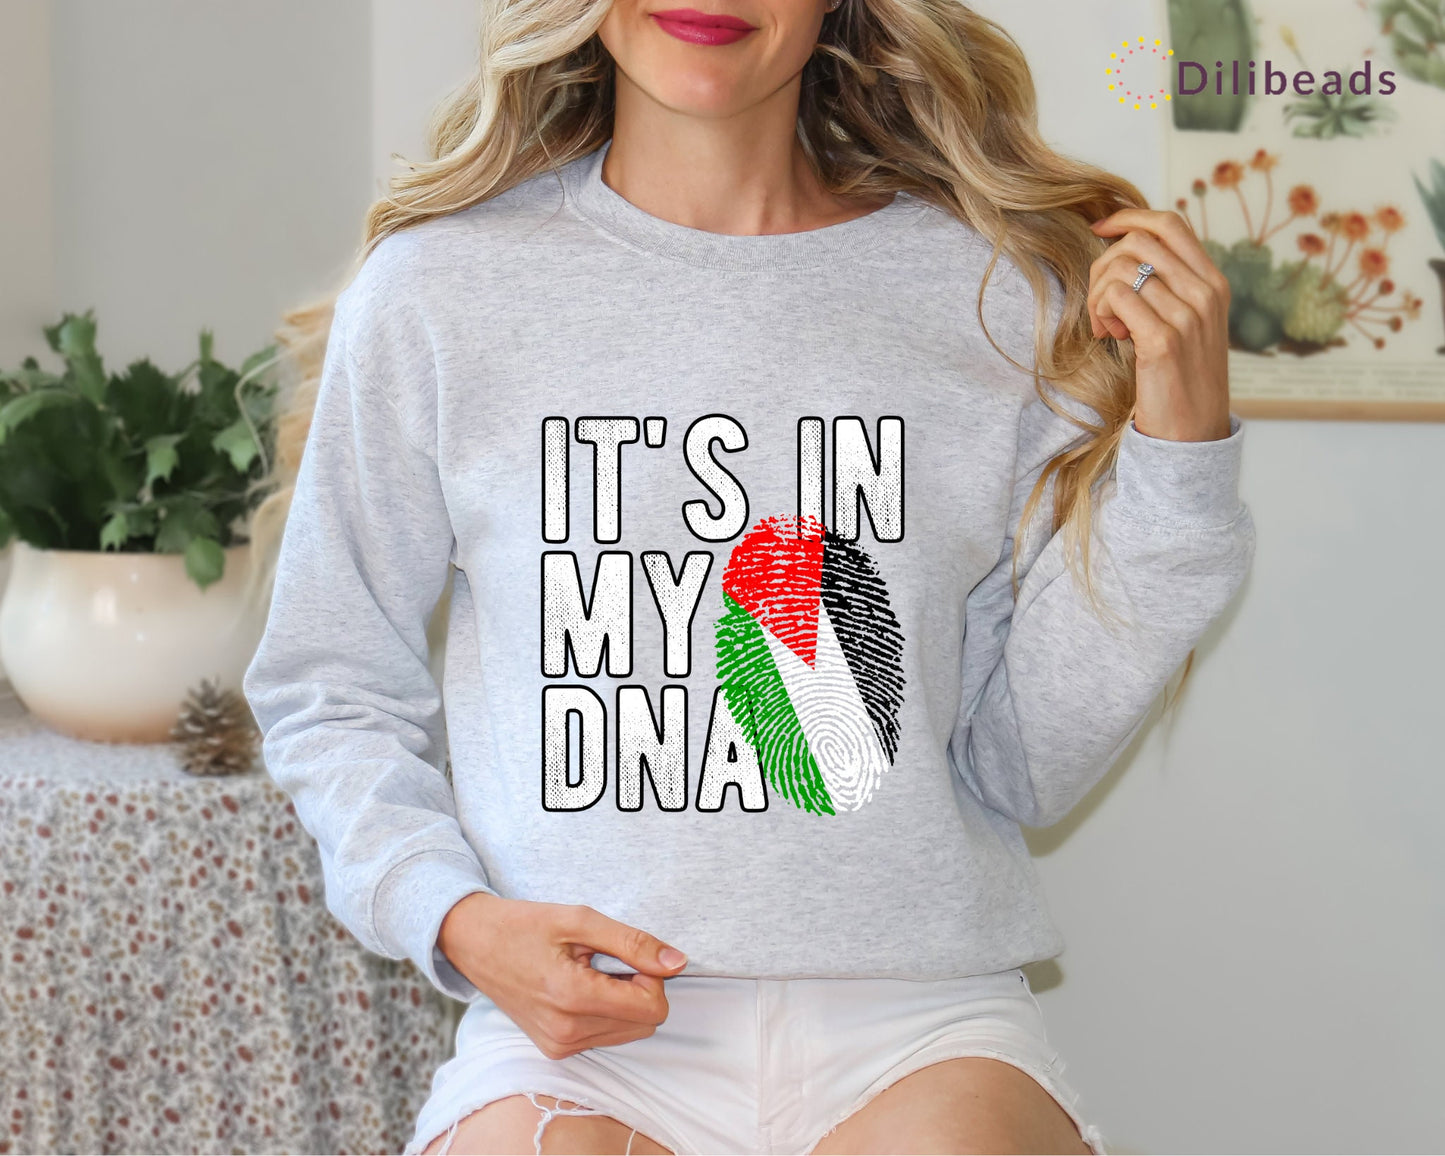 Palestine in DNA Sweatshirt, Palestine Shirt, Support Palestine, Stand With Palestine Shirt, Equality Tshirt, Human Rights, Activist Shirt